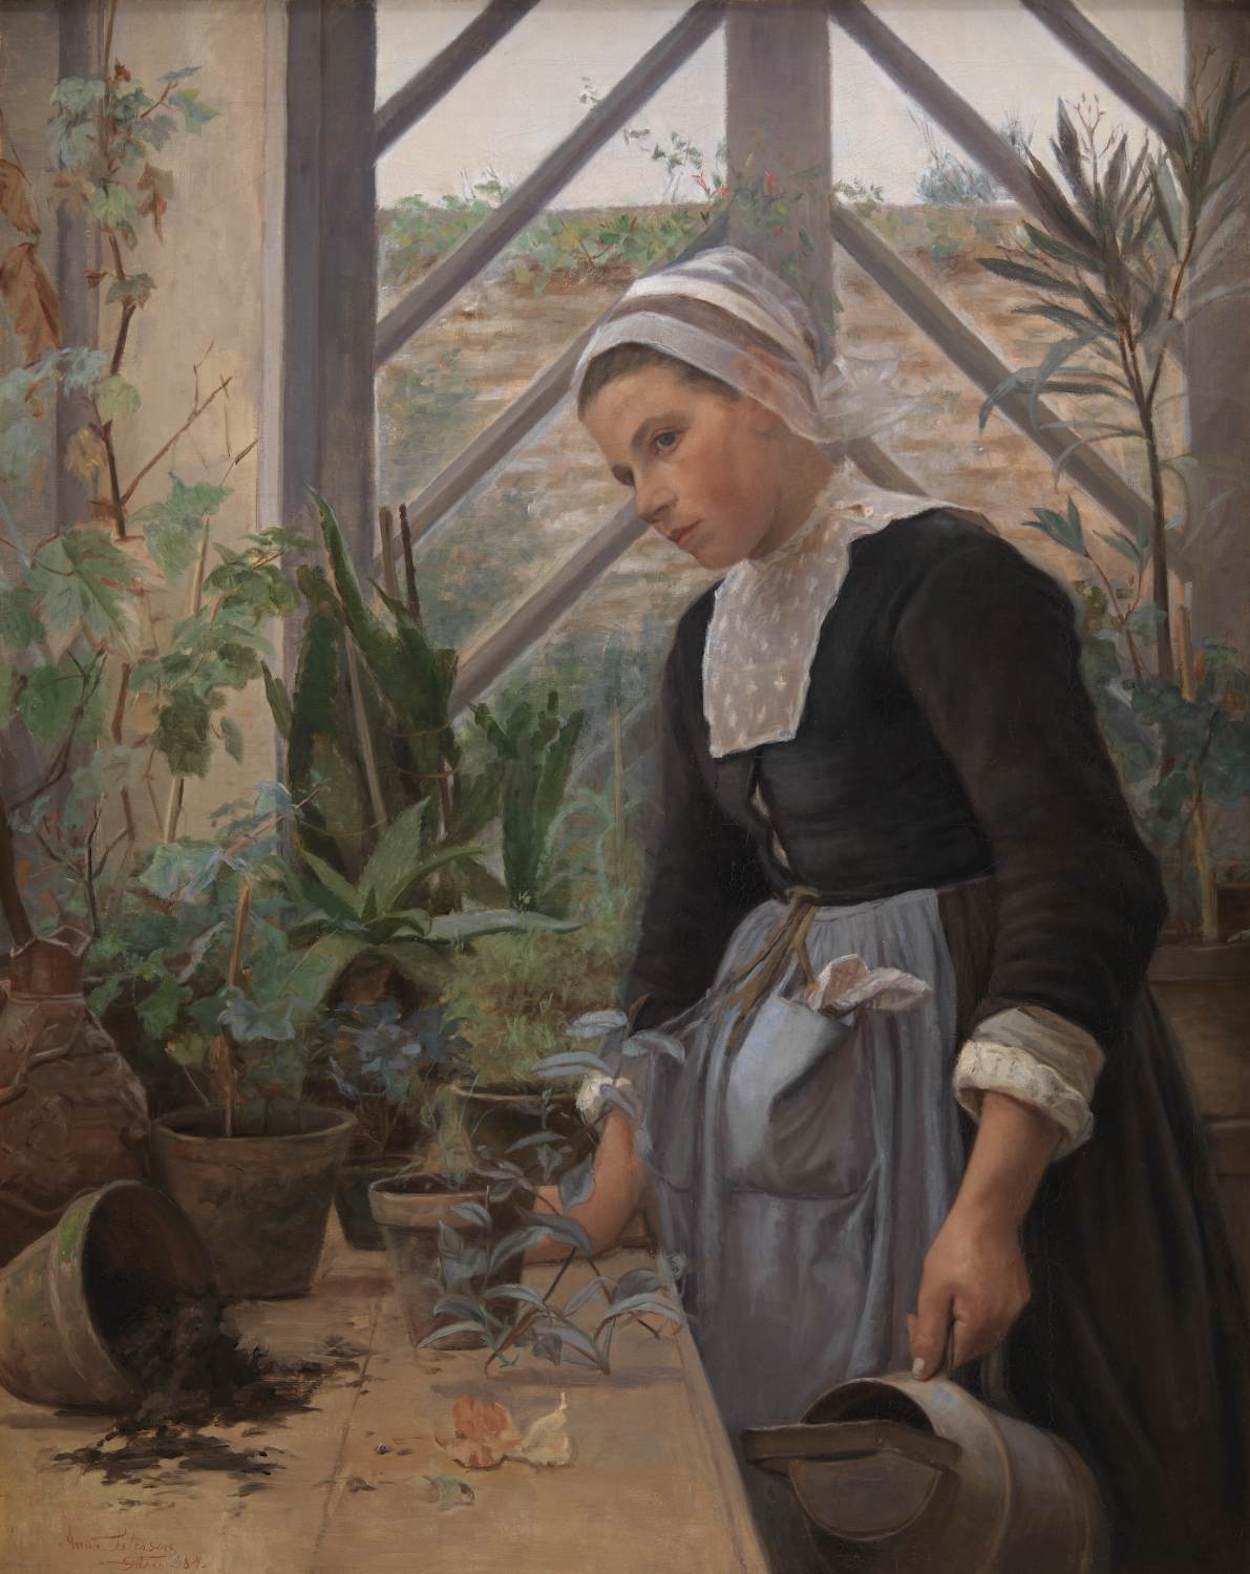 Muchacha bretona cuidando las plantas del invernadero by Anna Petersen - 1884 - 121 x 110 cm Galería Nacional de Dinamarca